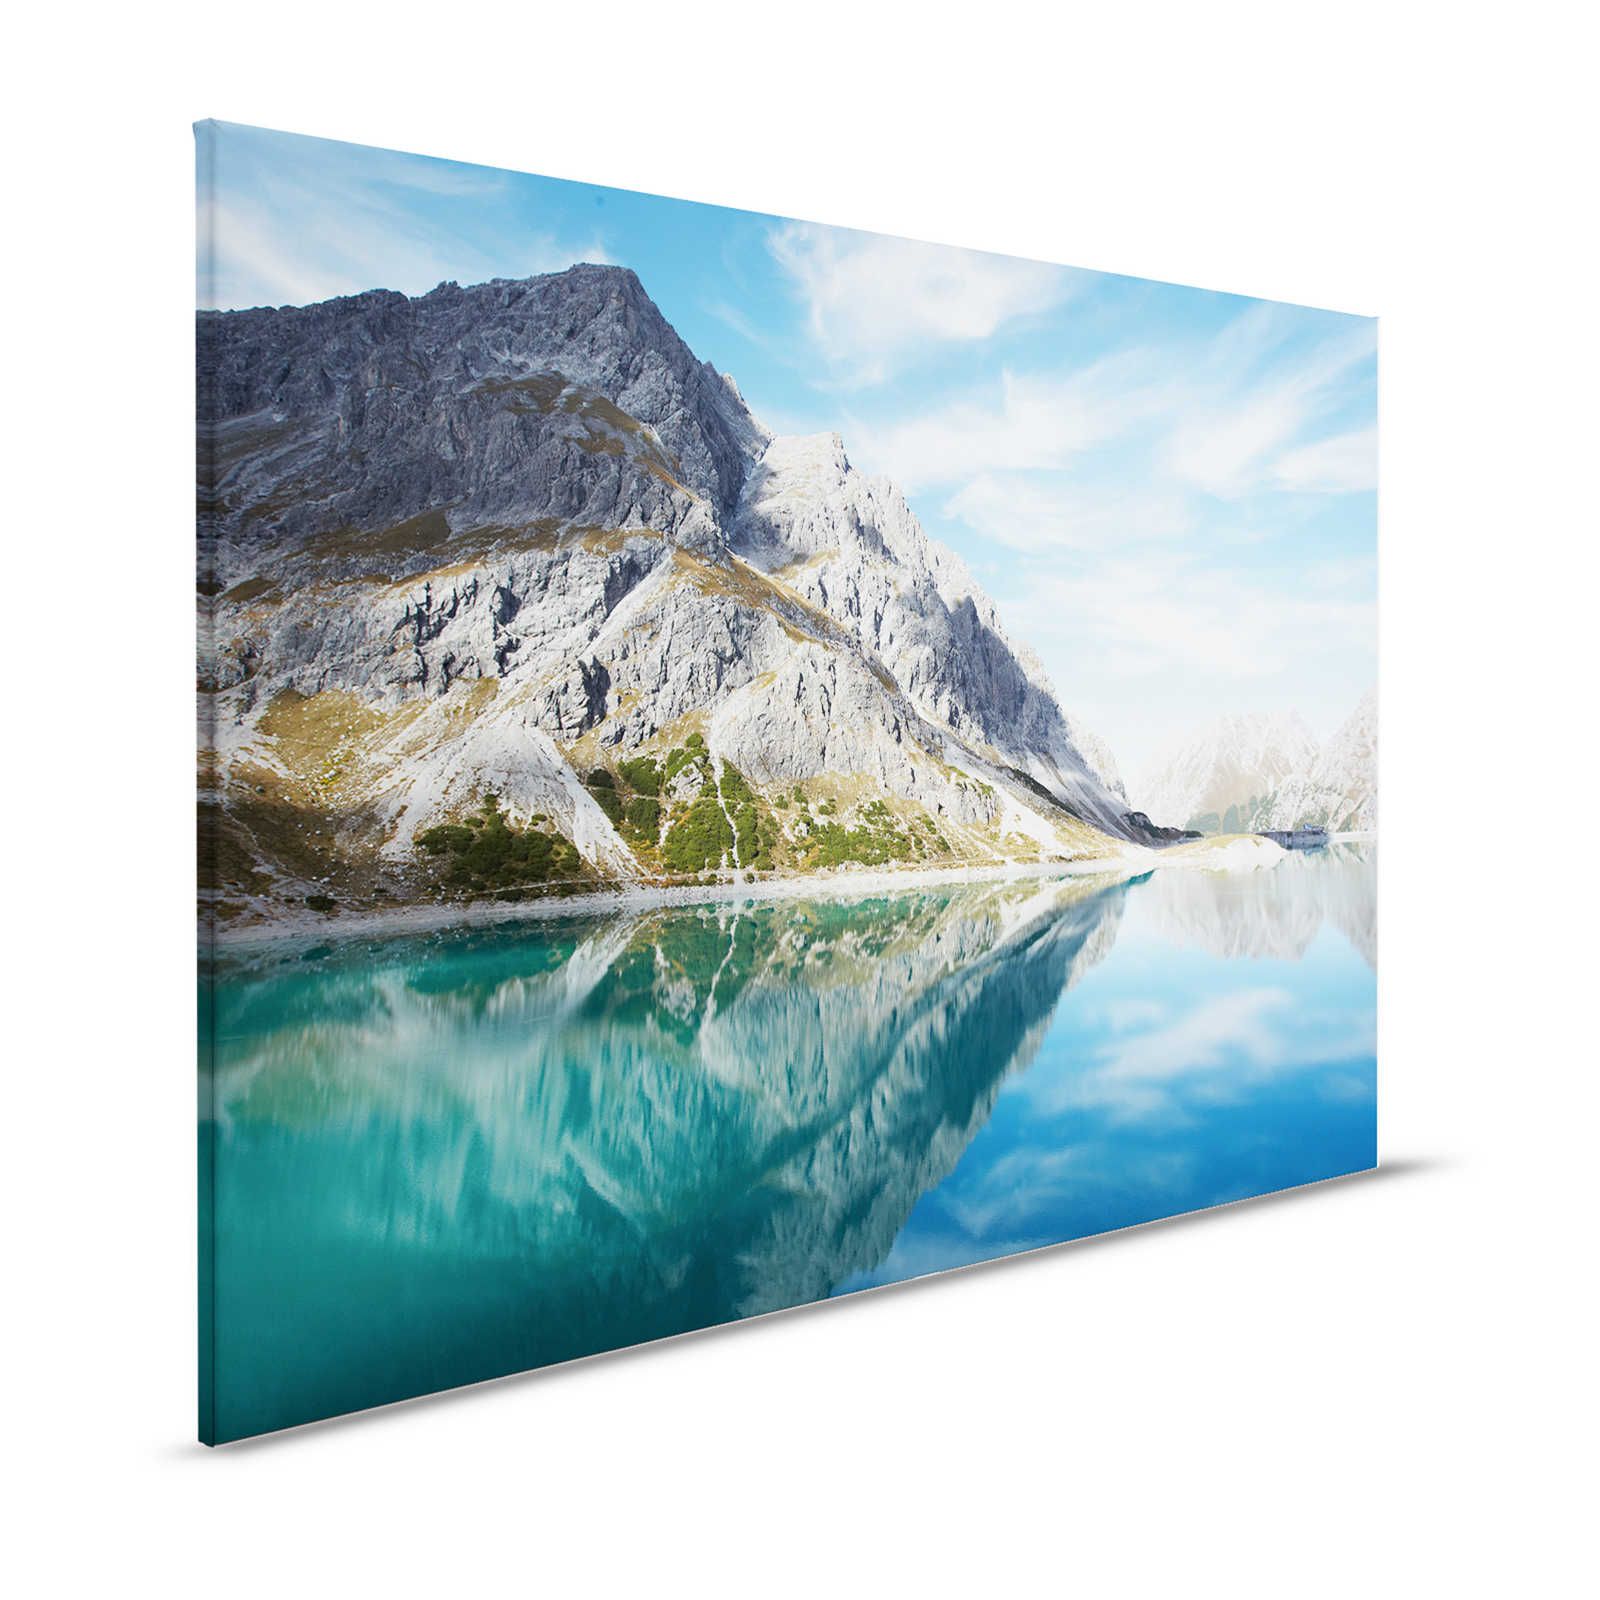 Lago di montagna trasparente - Quadro su tela con panorama naturale di montagna - 1,20 m x 0,80 m
